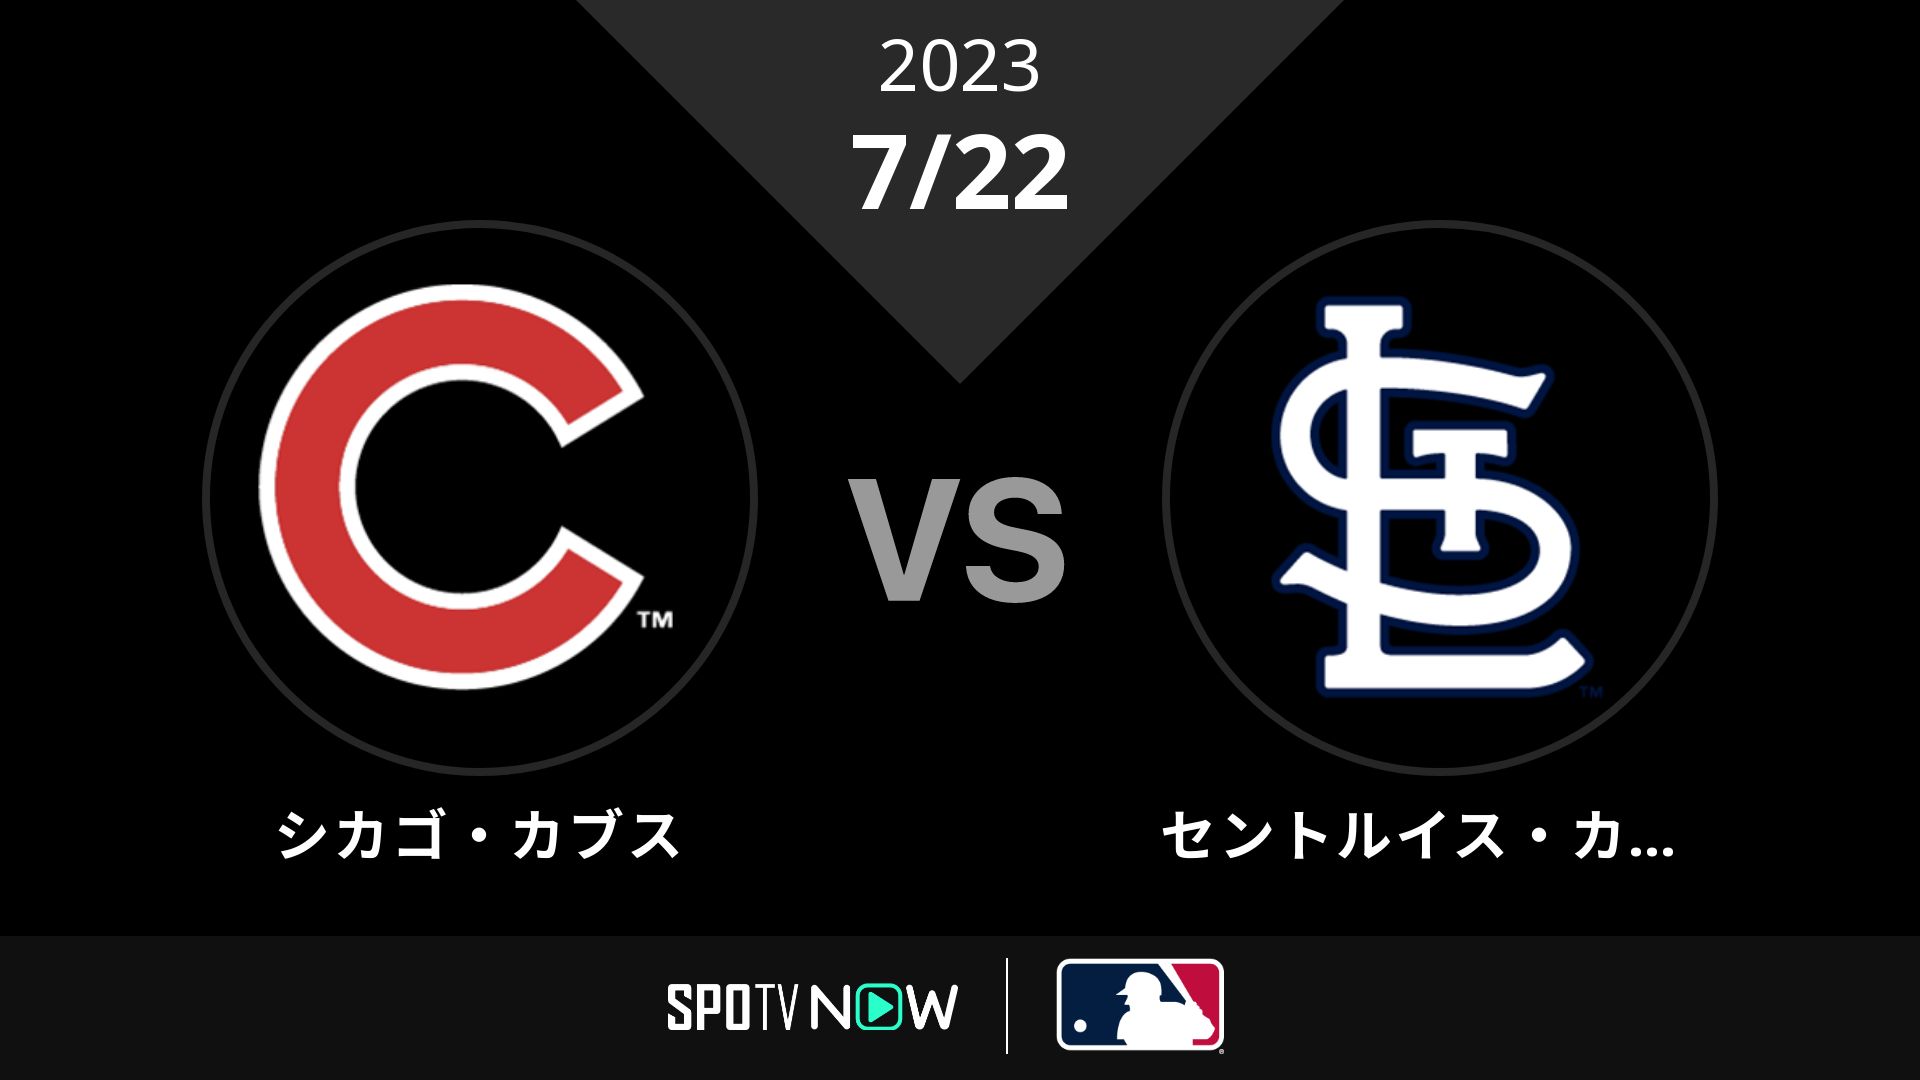 2023/7/22 カブス vs カージナルス [MLB]